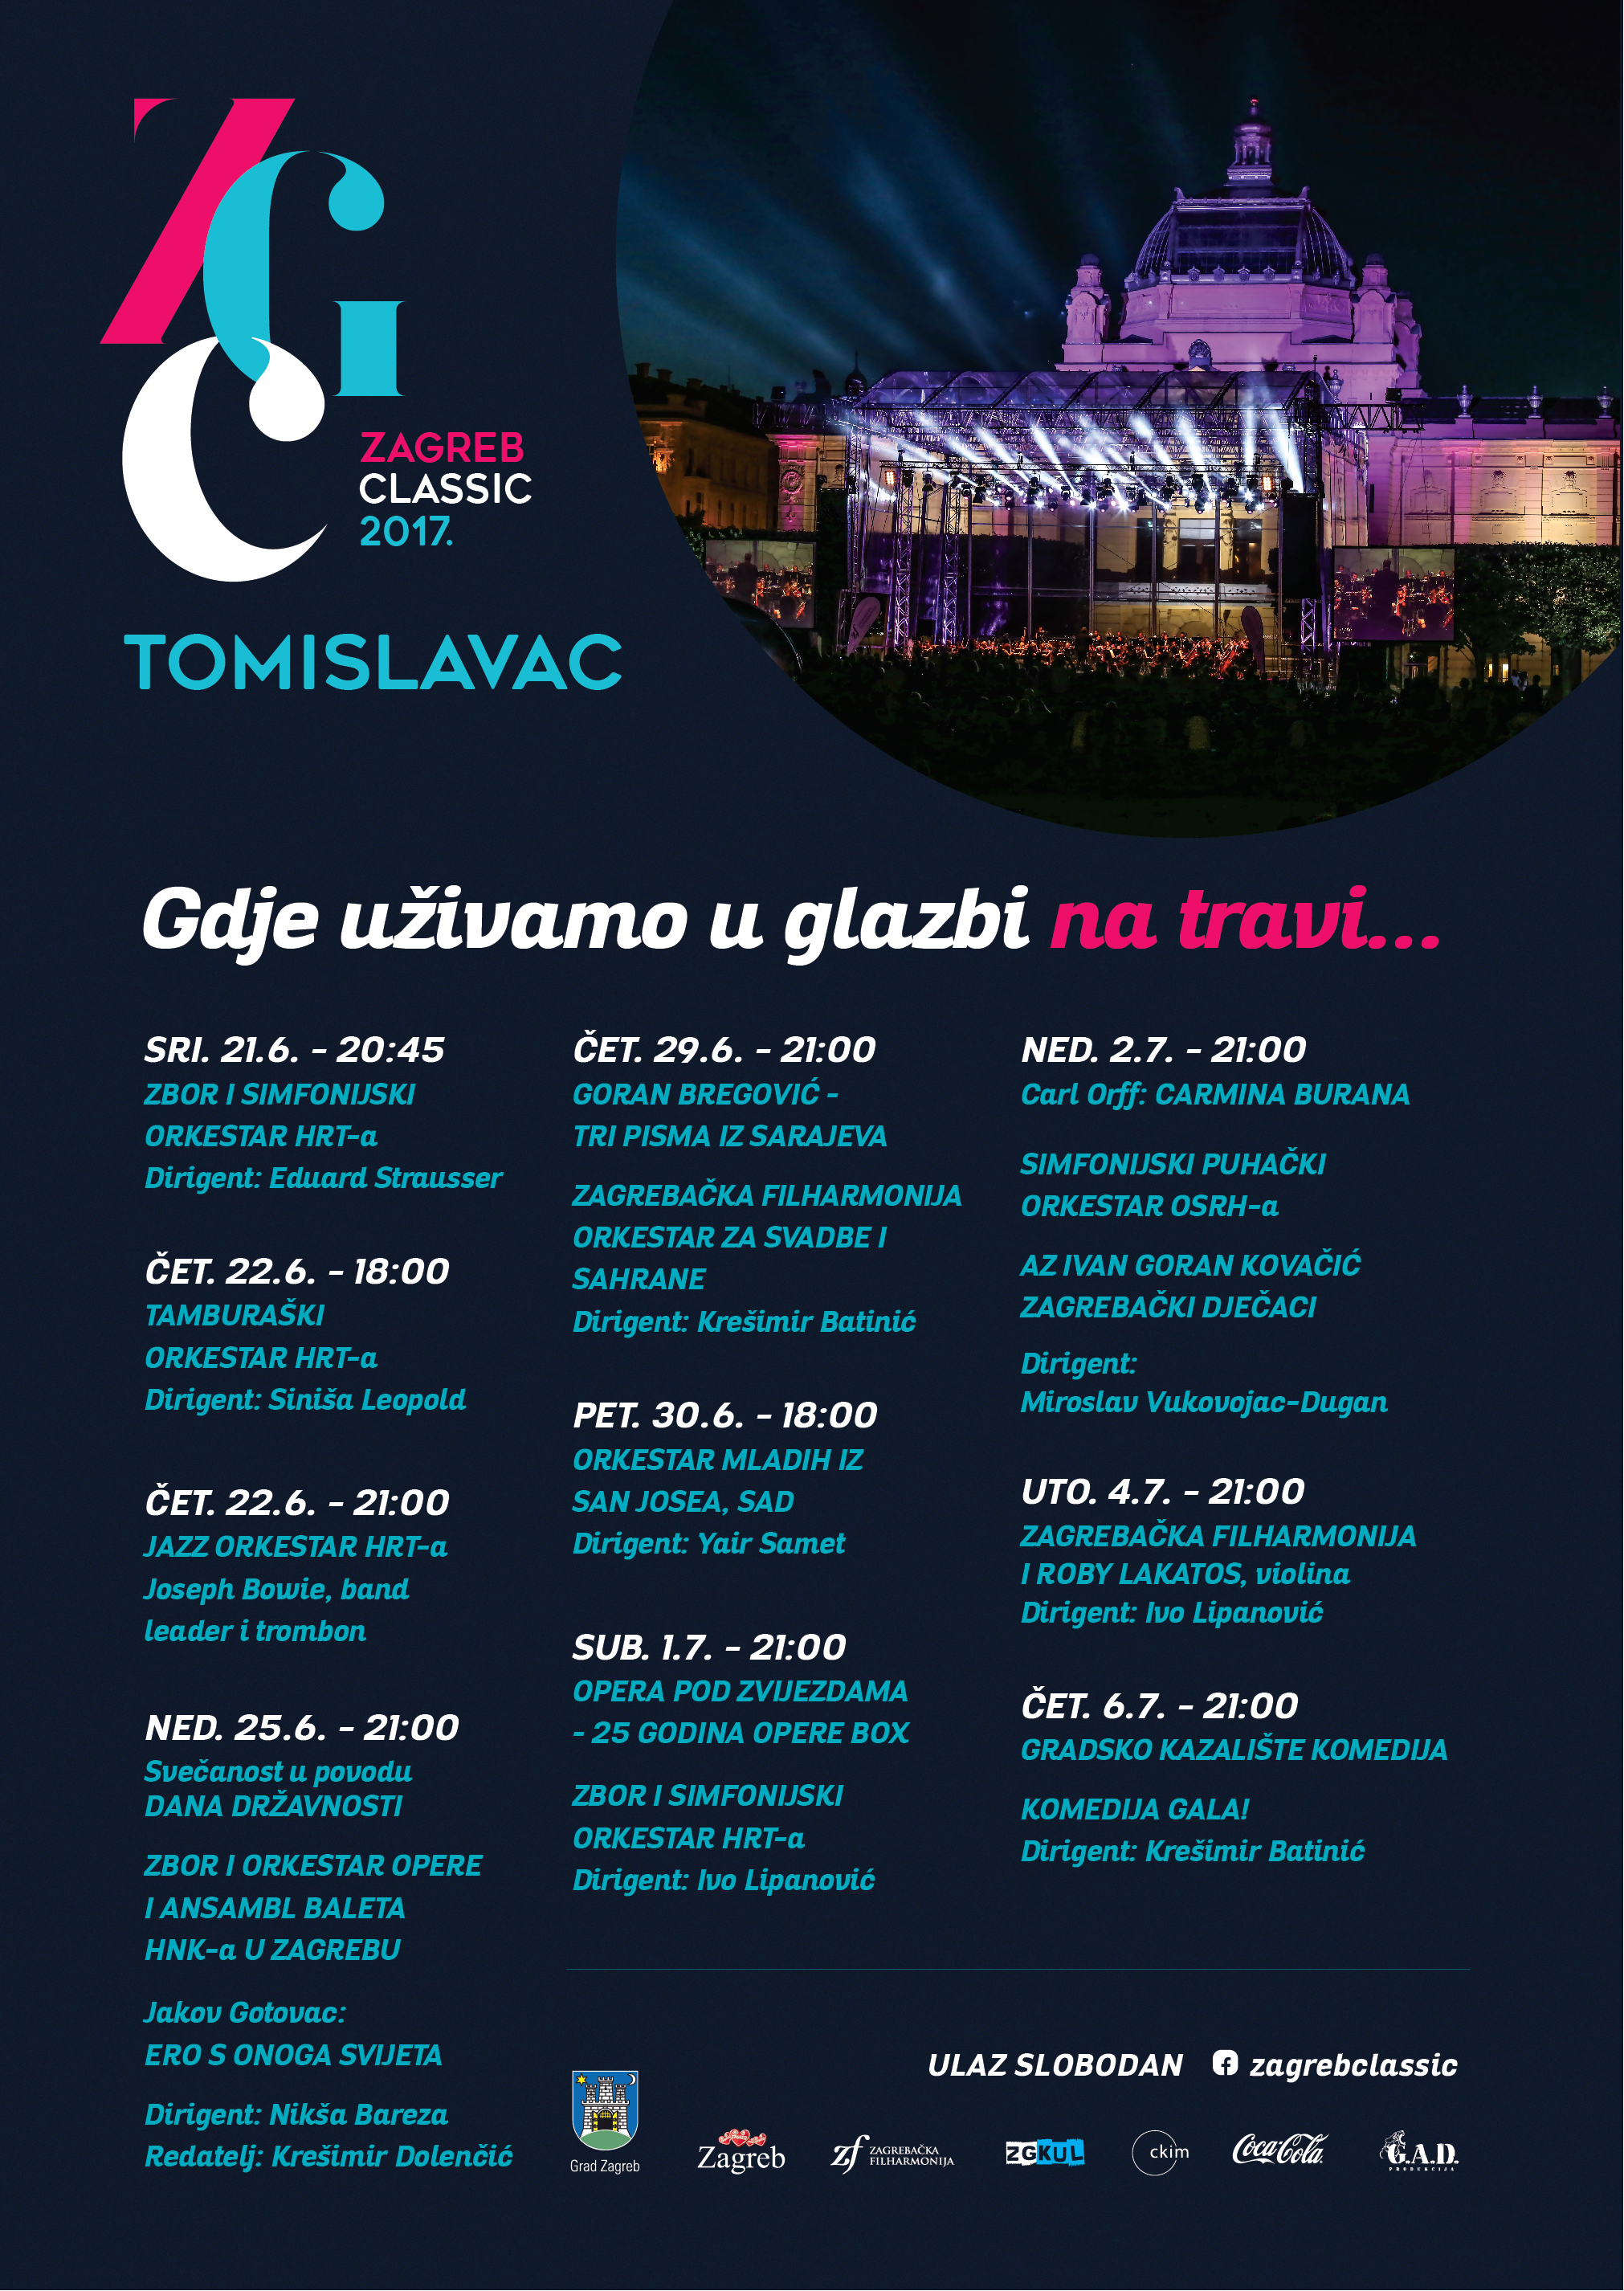 ČAROBNI BROADWAY - koncert u sklopu Festivala Zagreb Classic